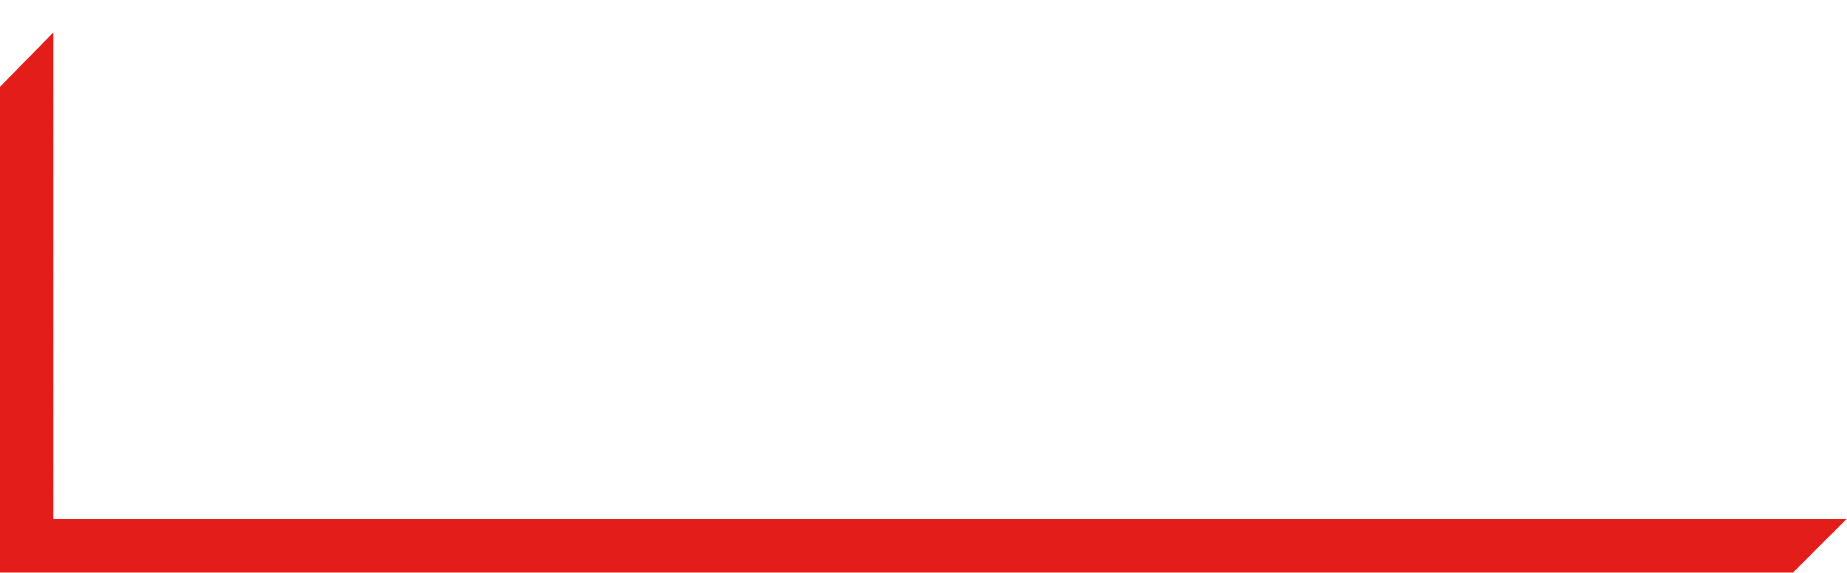 Burford Capital logo grand pour les fonds sombres (PNG transparent)